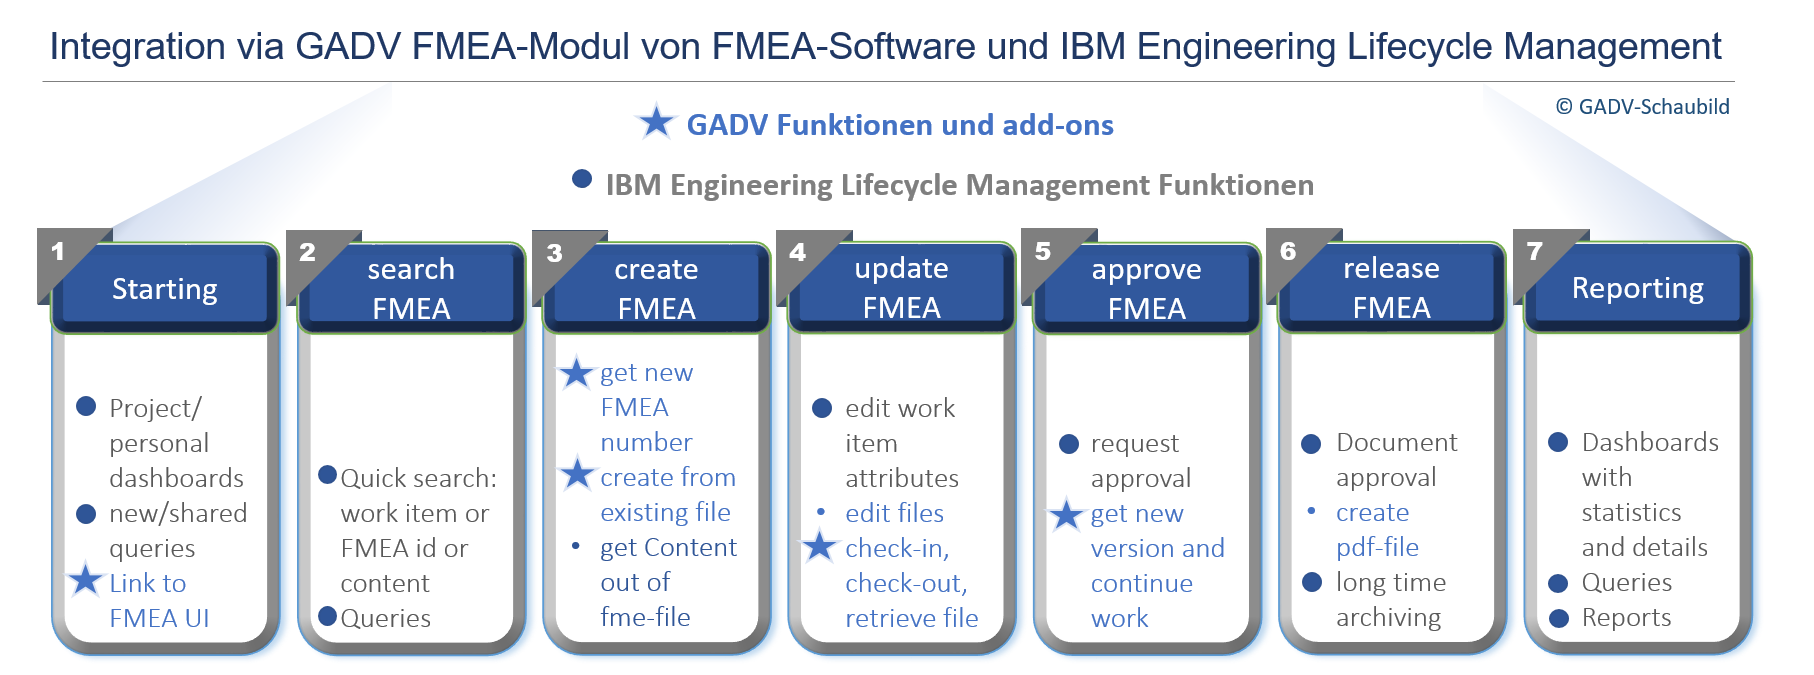 Schaubild der neuen Funktionen u Erweiterungen über GADV-FMEA Integration